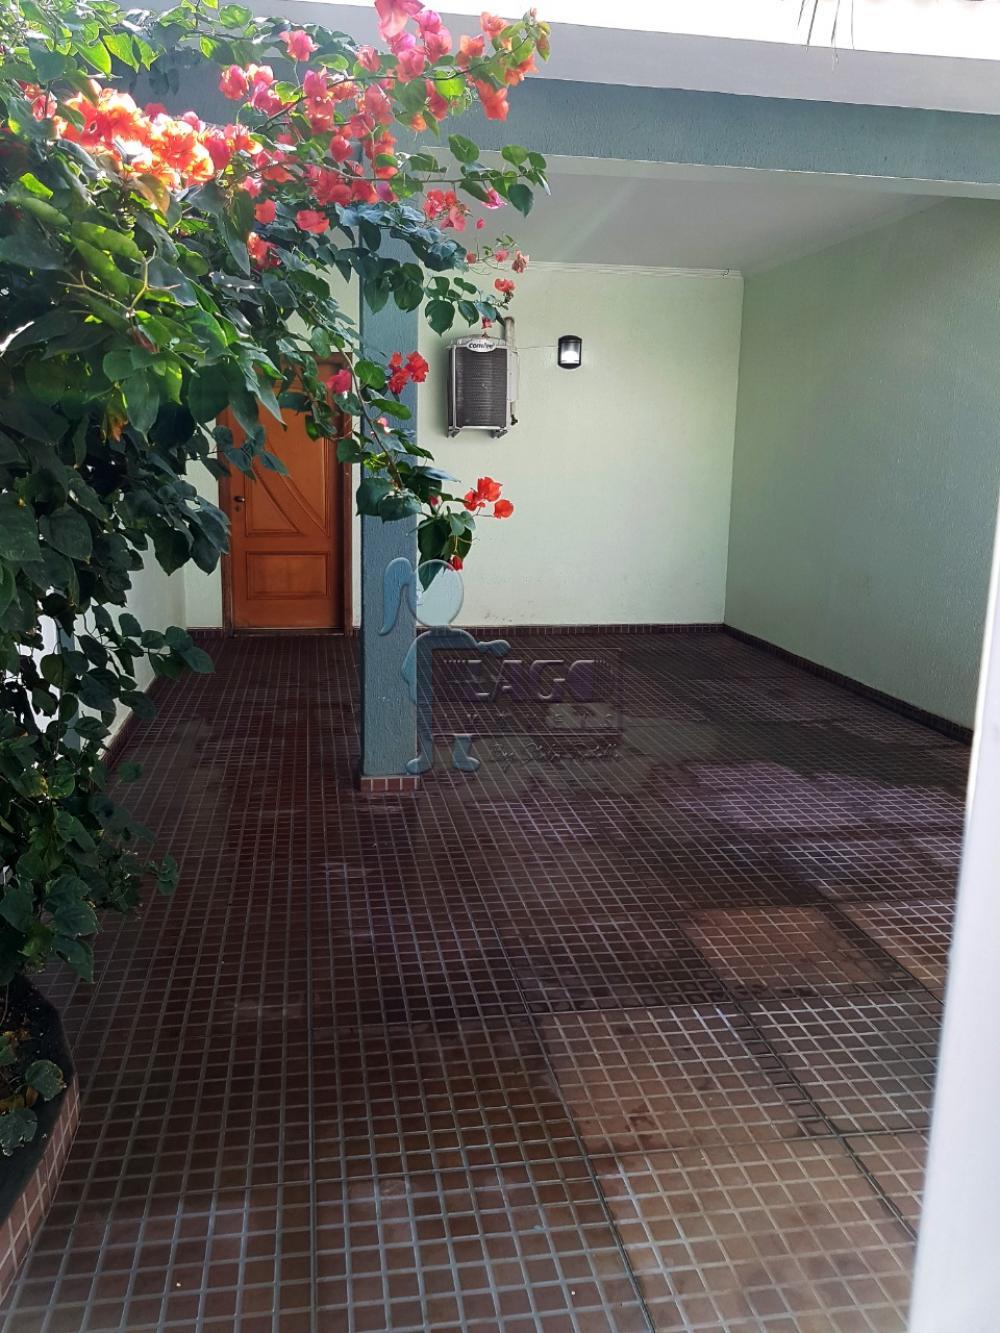 Alugar Casas / Padrão em Ribeirão Preto R$ 1.800,00 - Foto 2